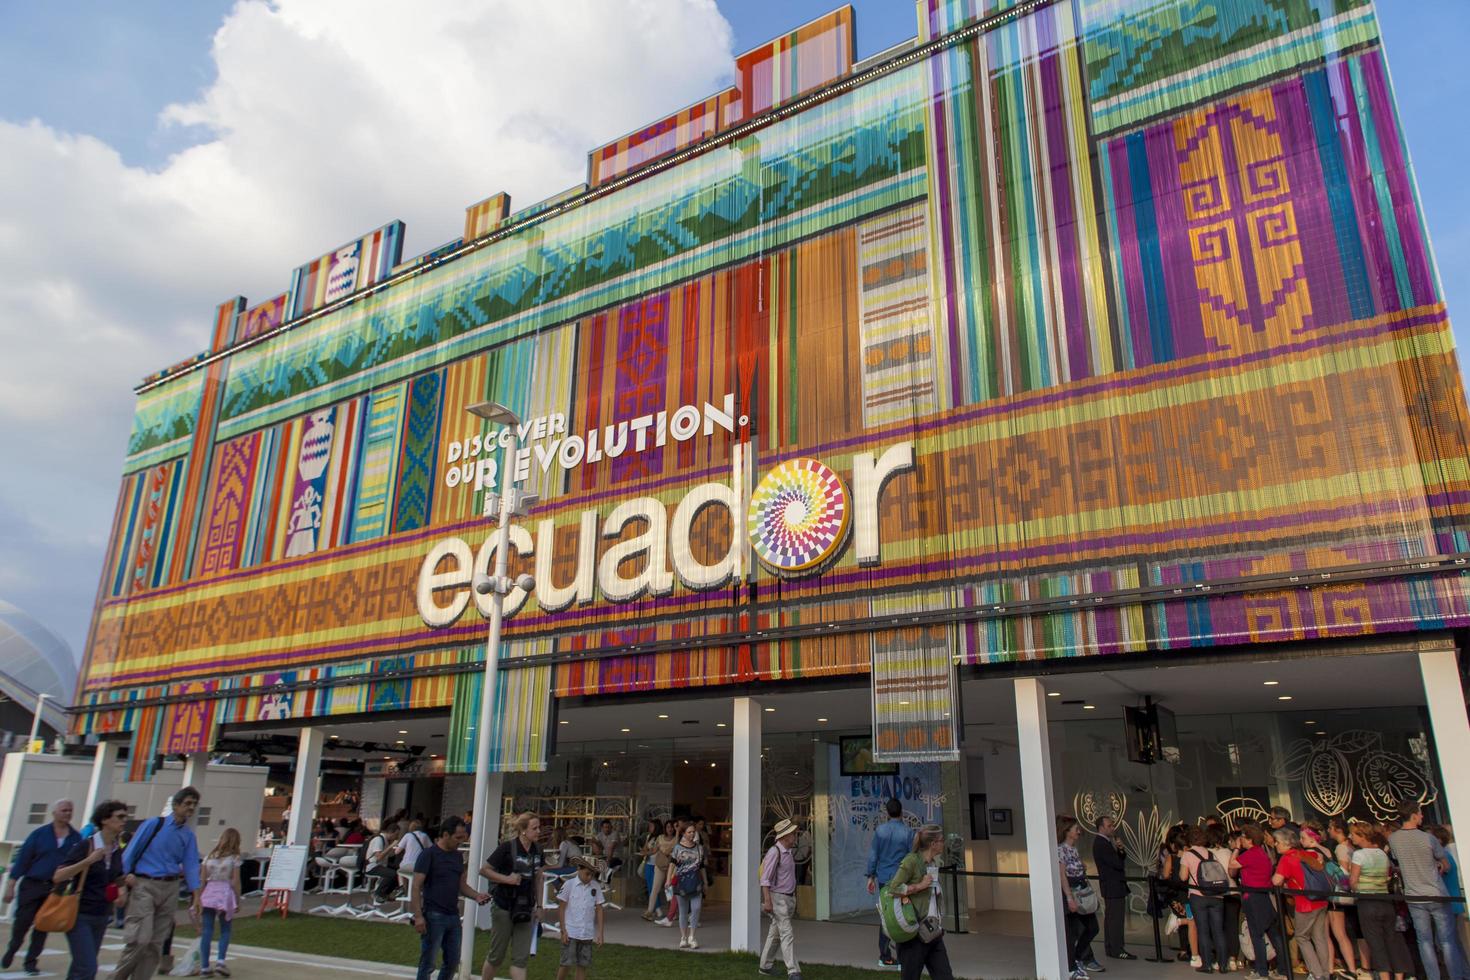 Mailand, Italien, 1. Juni 2015 - nicht identifizierte Personen durch den Ecuador-Pavillon auf der Expo 2015 in Mailand, Italien. Die expo 2015 fand vom 1. Mai bis 31. Oktober 2015 statt. foto